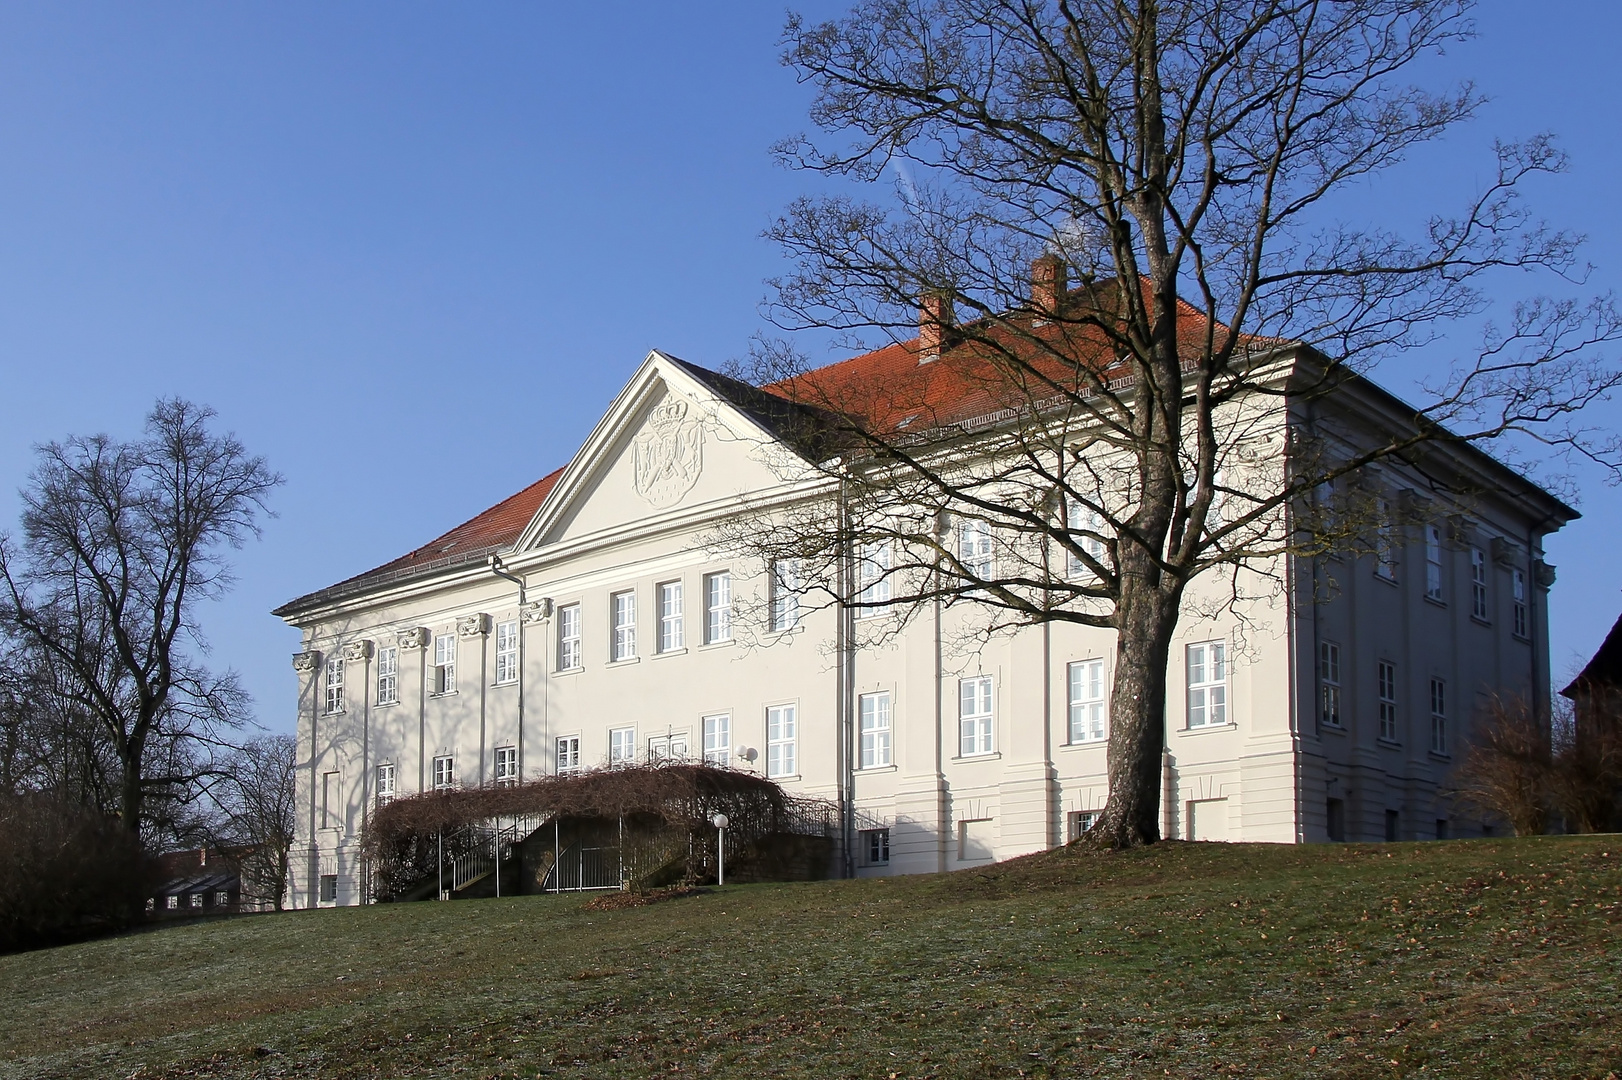 Willkommen auf Schloss Hohenzieritz